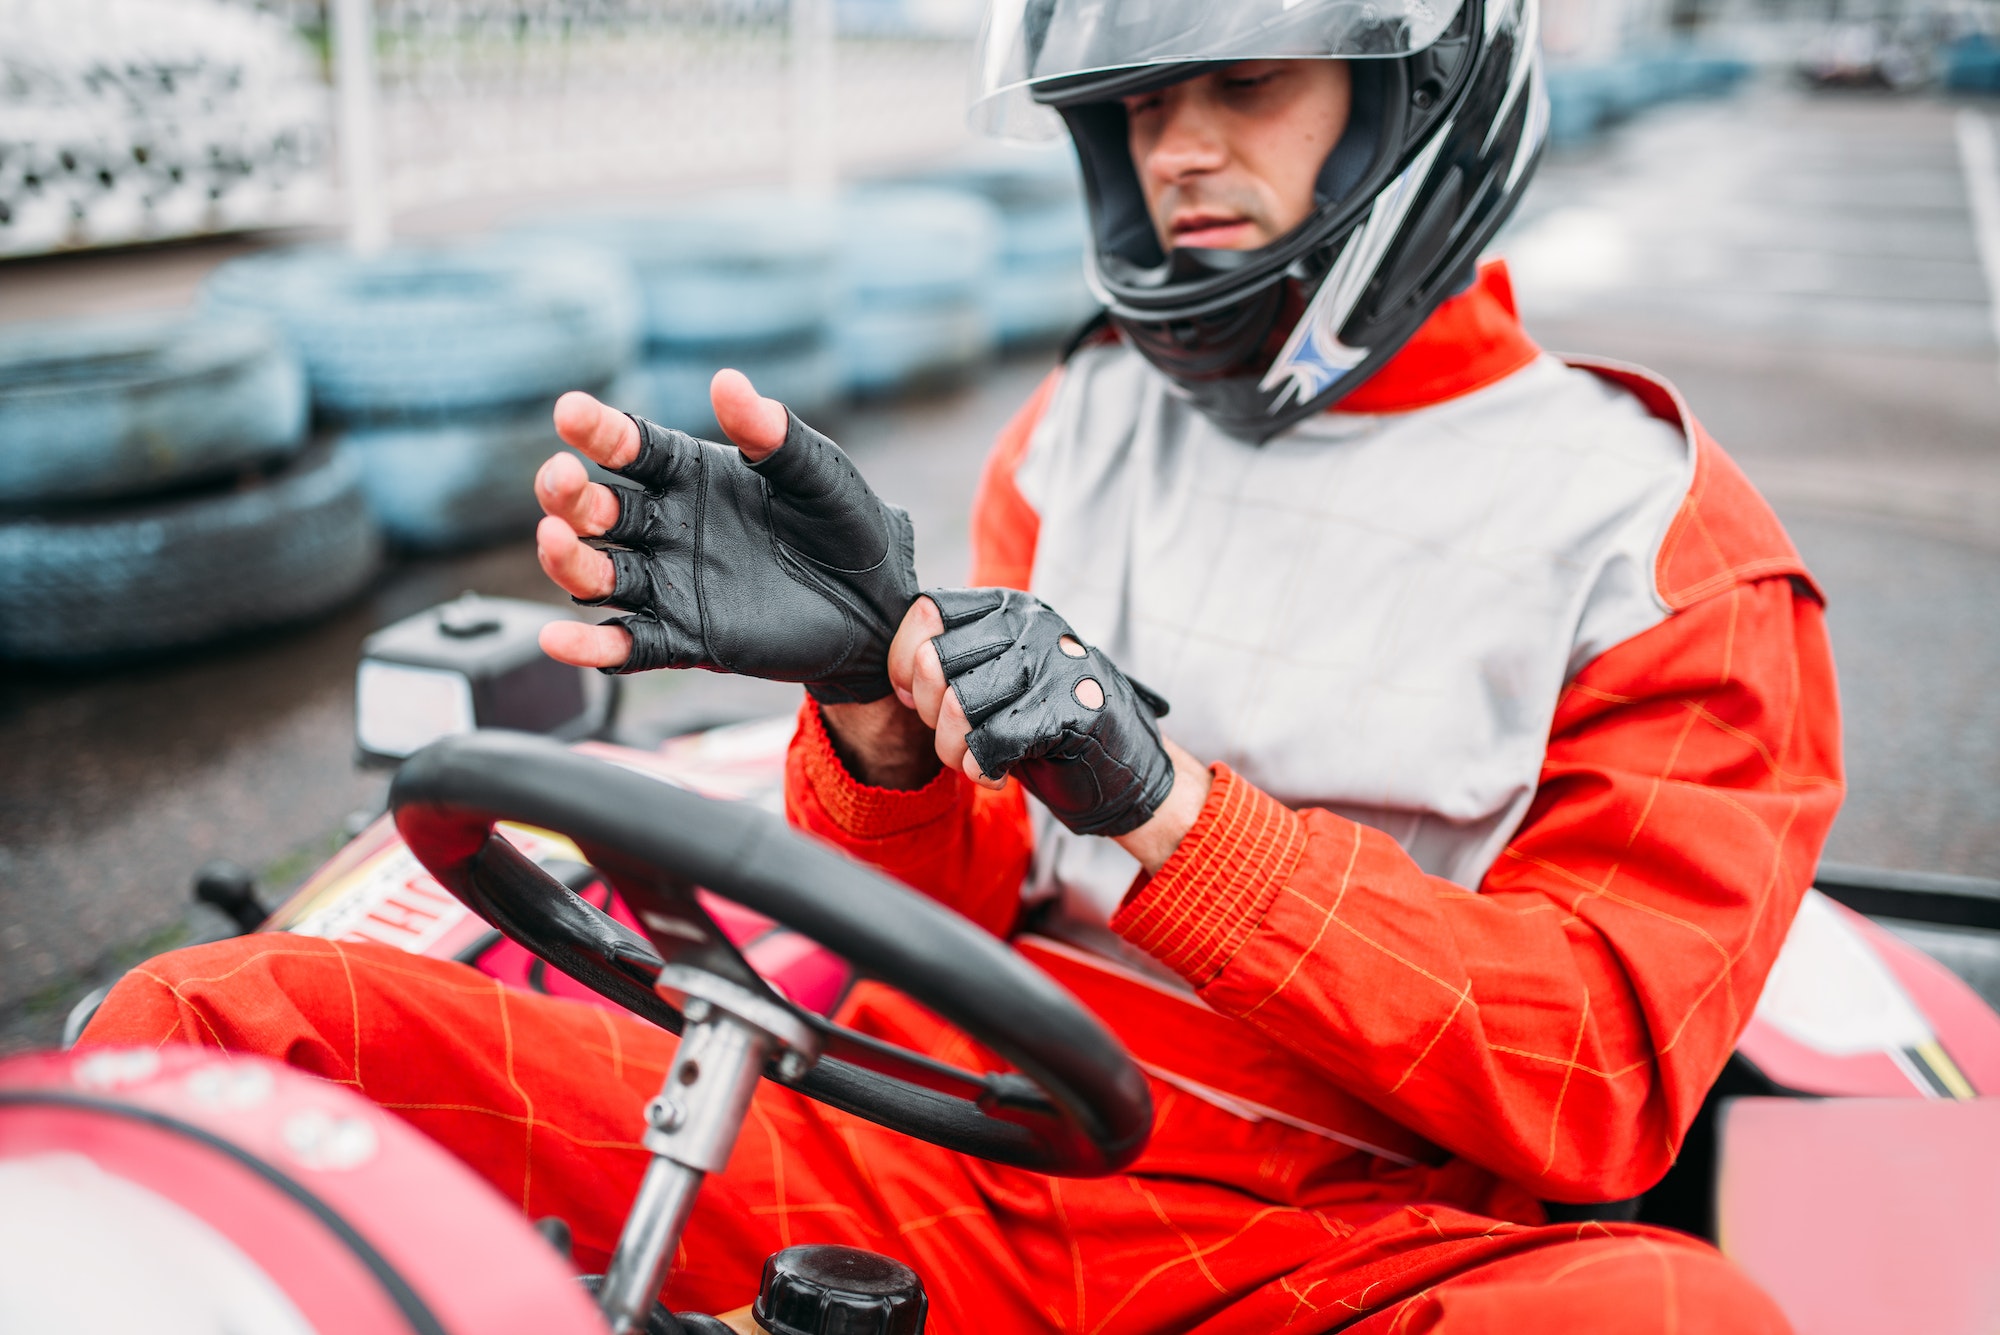 Go-kart driver in helmet on karting speed track